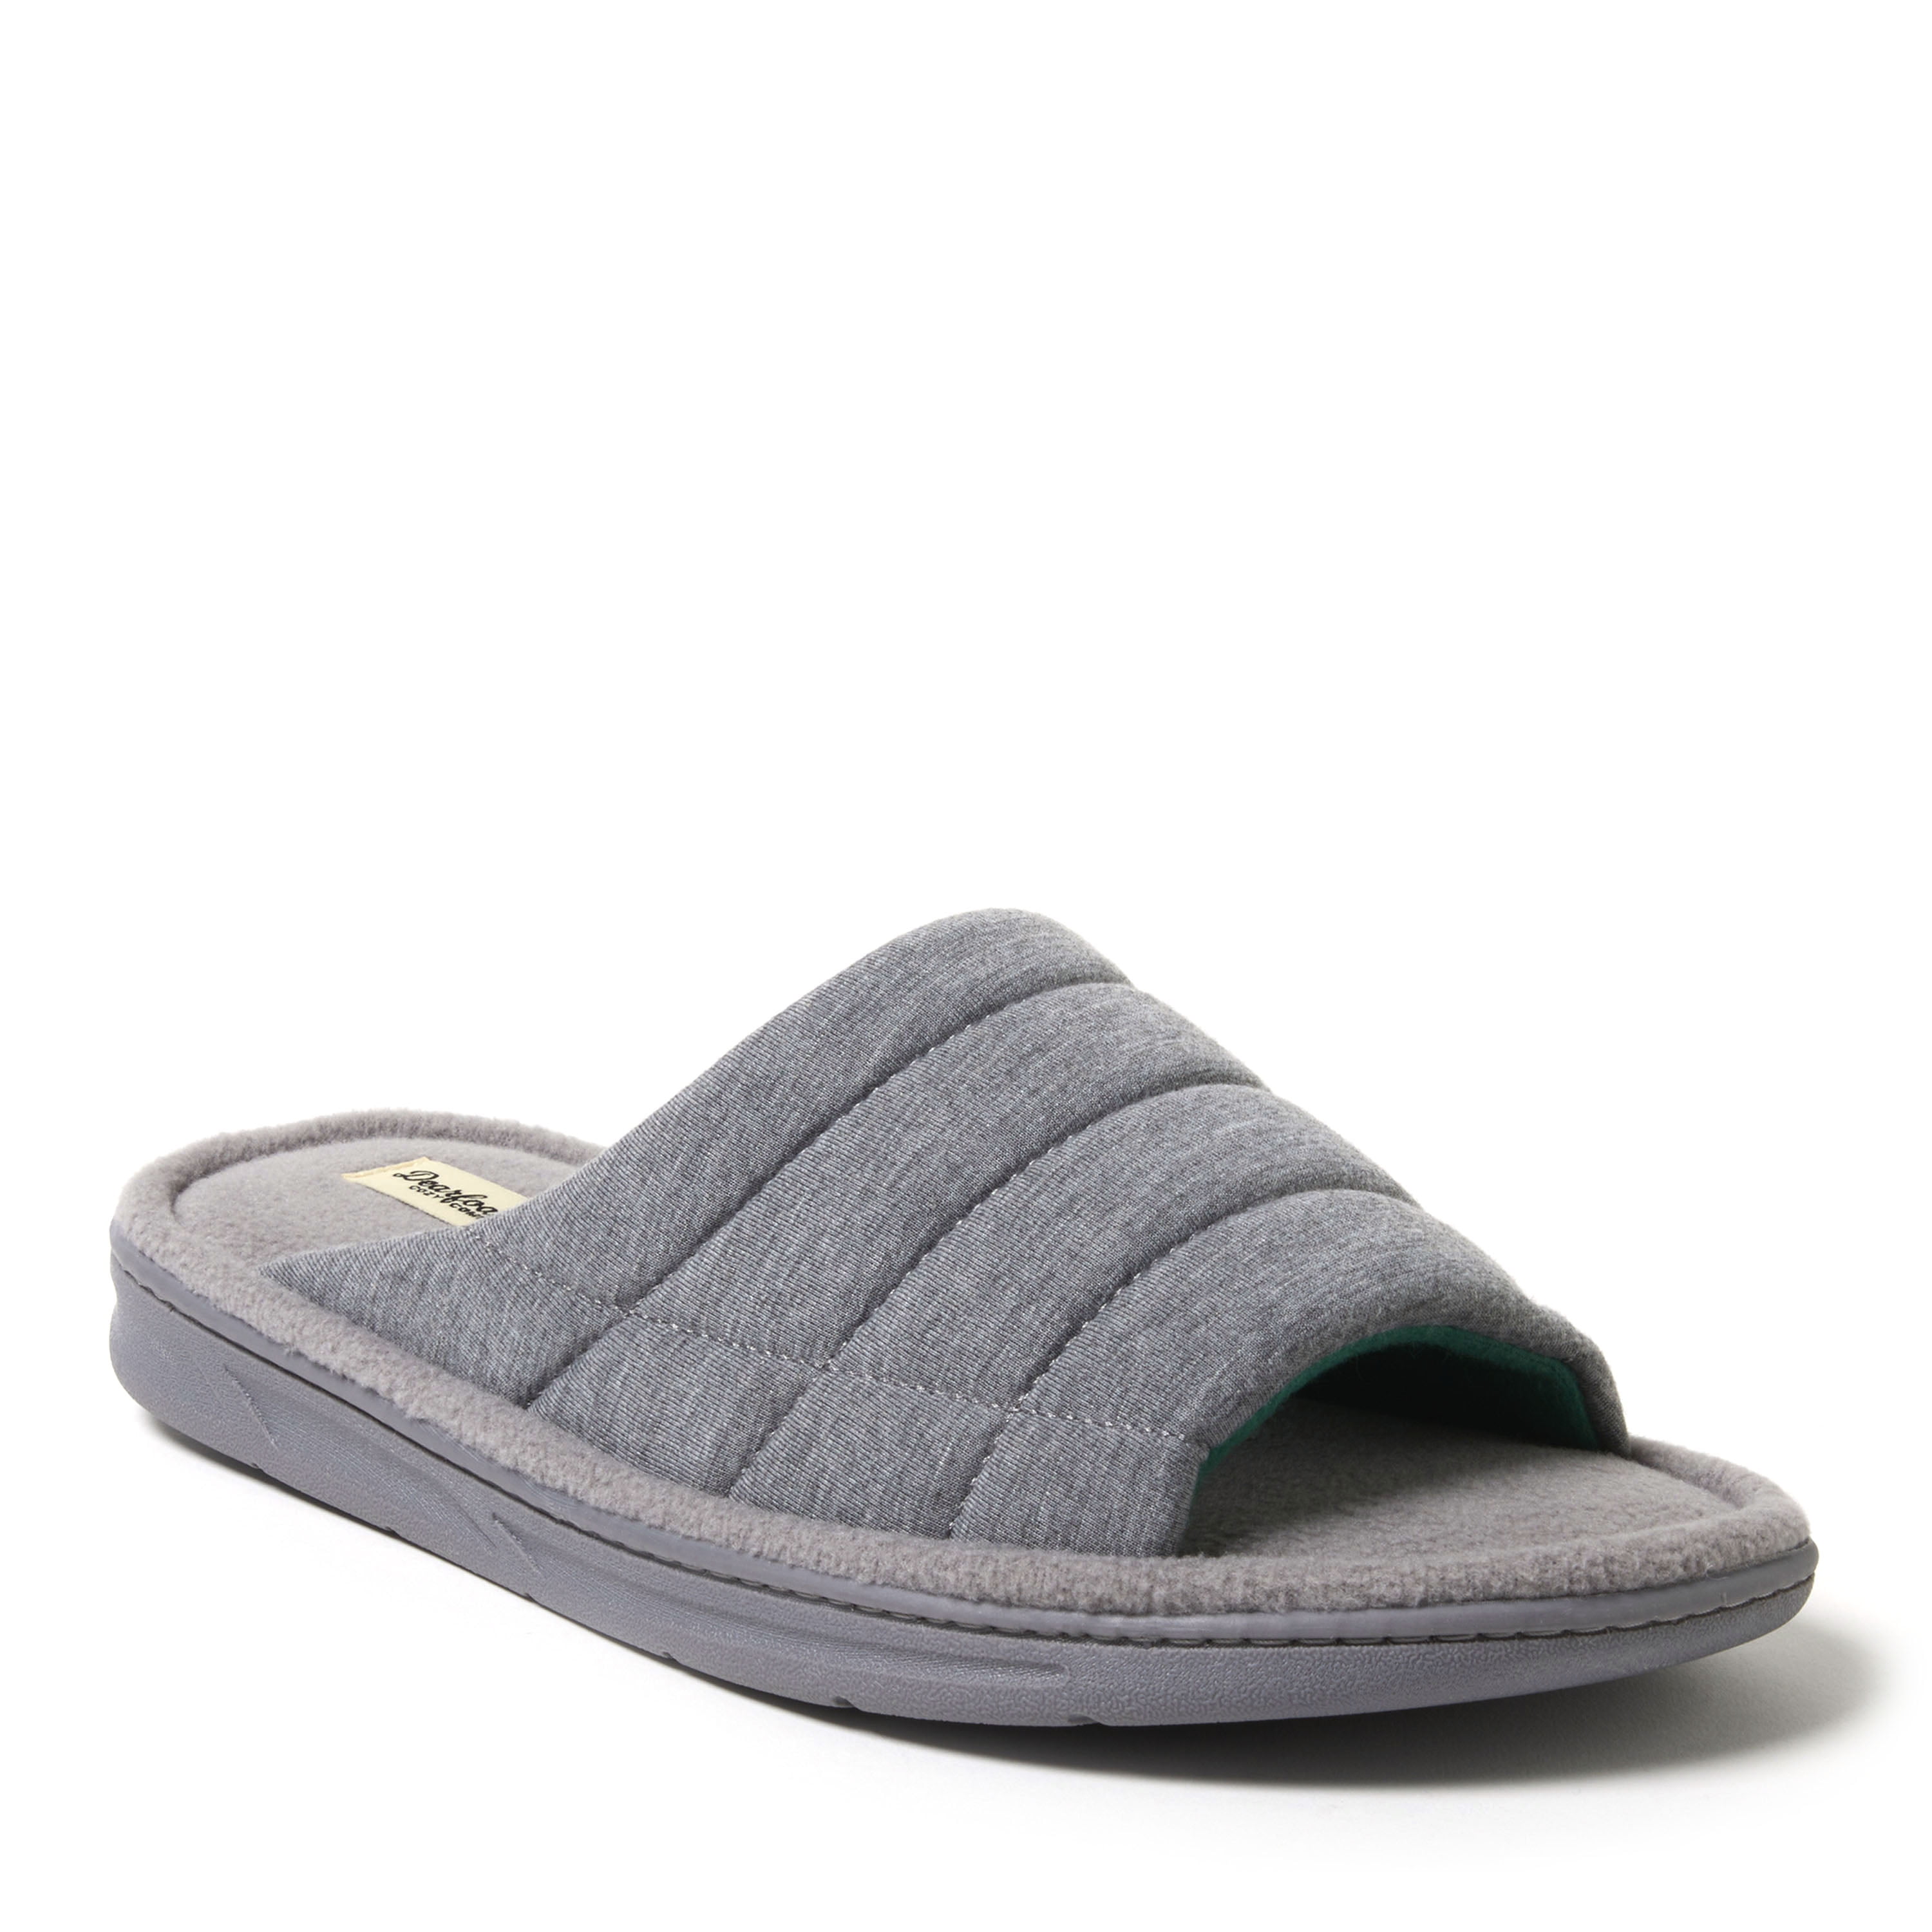 Dearfoams Cozy Comfort Men's Quilted Jersey Slide Slippers - Walmart.com